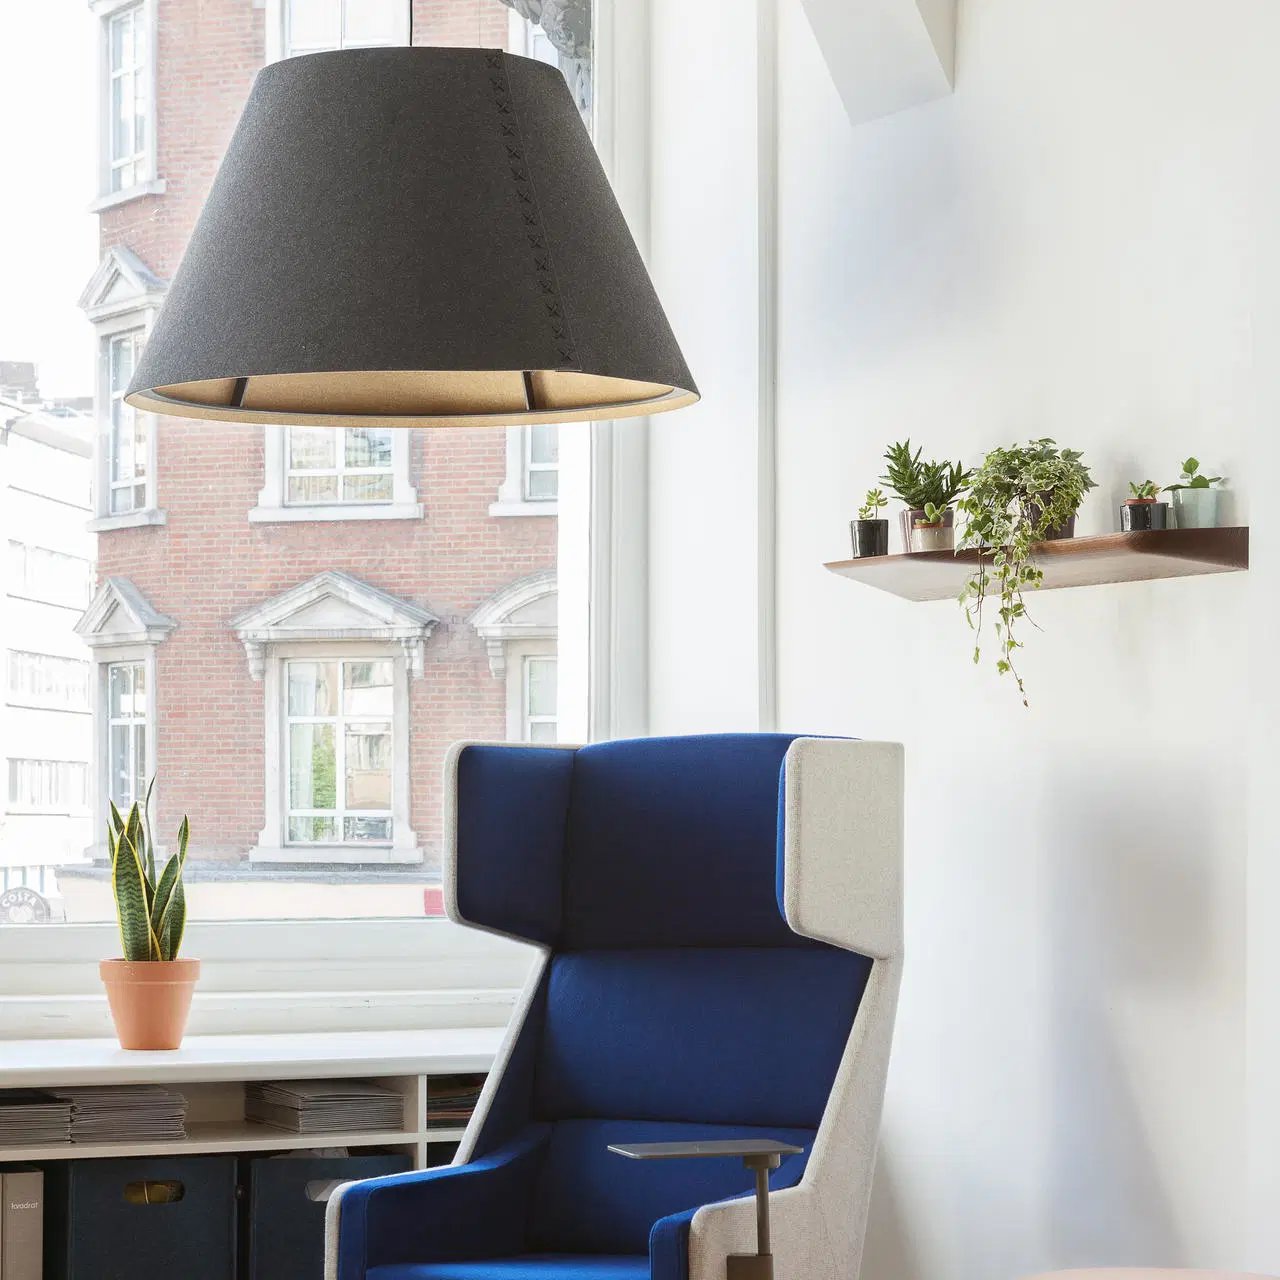 Lampe suspendue moderne de luxe pour éclairage de cuisine, luminaire suspendu intérieur pour salon, chambre et cuisine, lampe de plafond moderne.